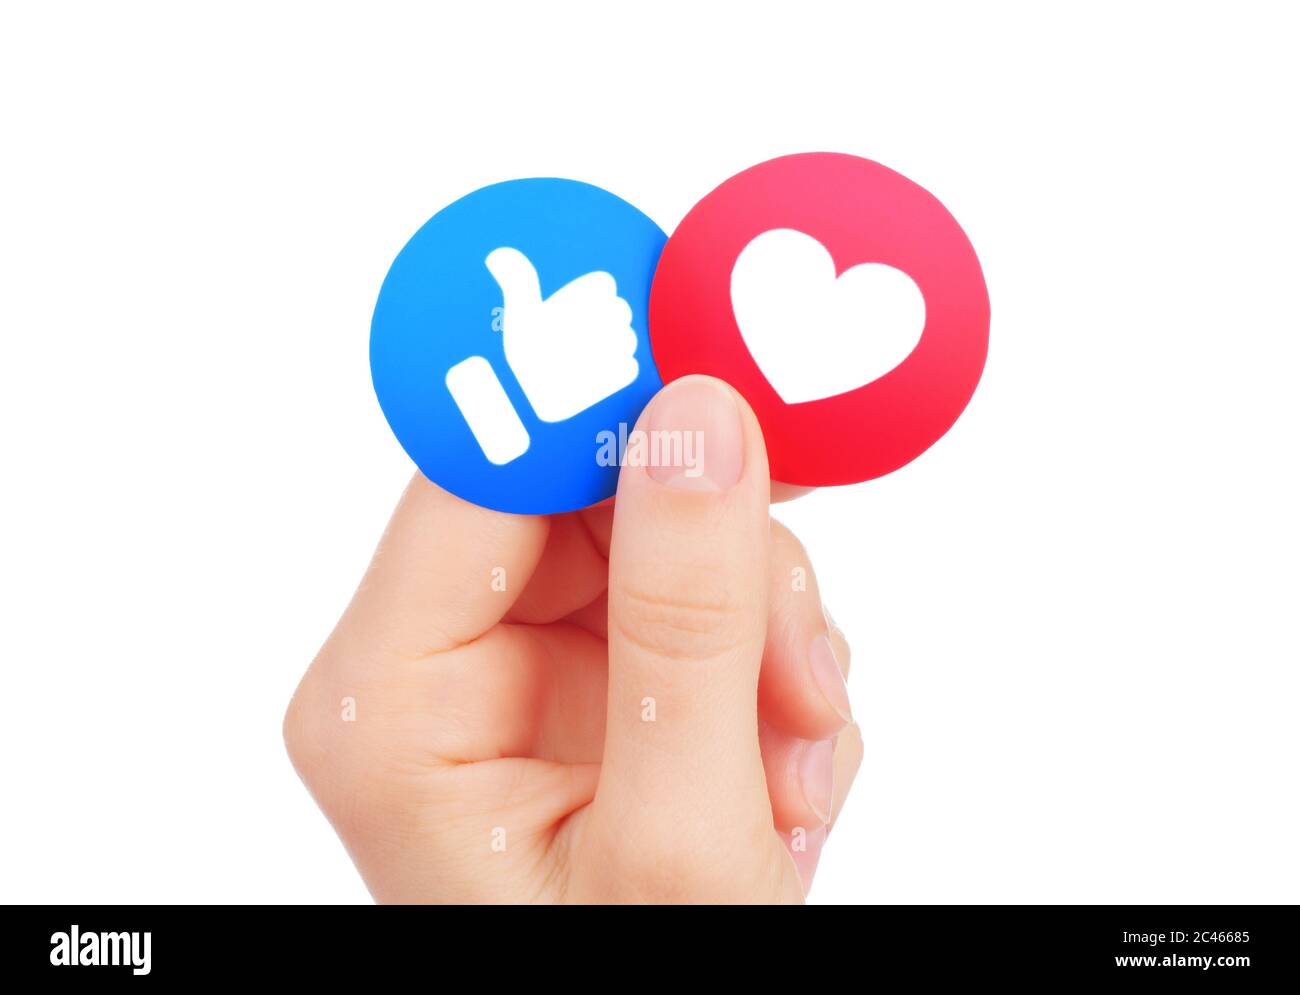 Kiew, Ukraine - 15. Mai 2019: Hand hält neue Facebook Like and Love empathische Emoji-Reaktionen, gedruckt auf Papier. Facebook ist ein bekanntes soziales Netzwerk Stockfoto